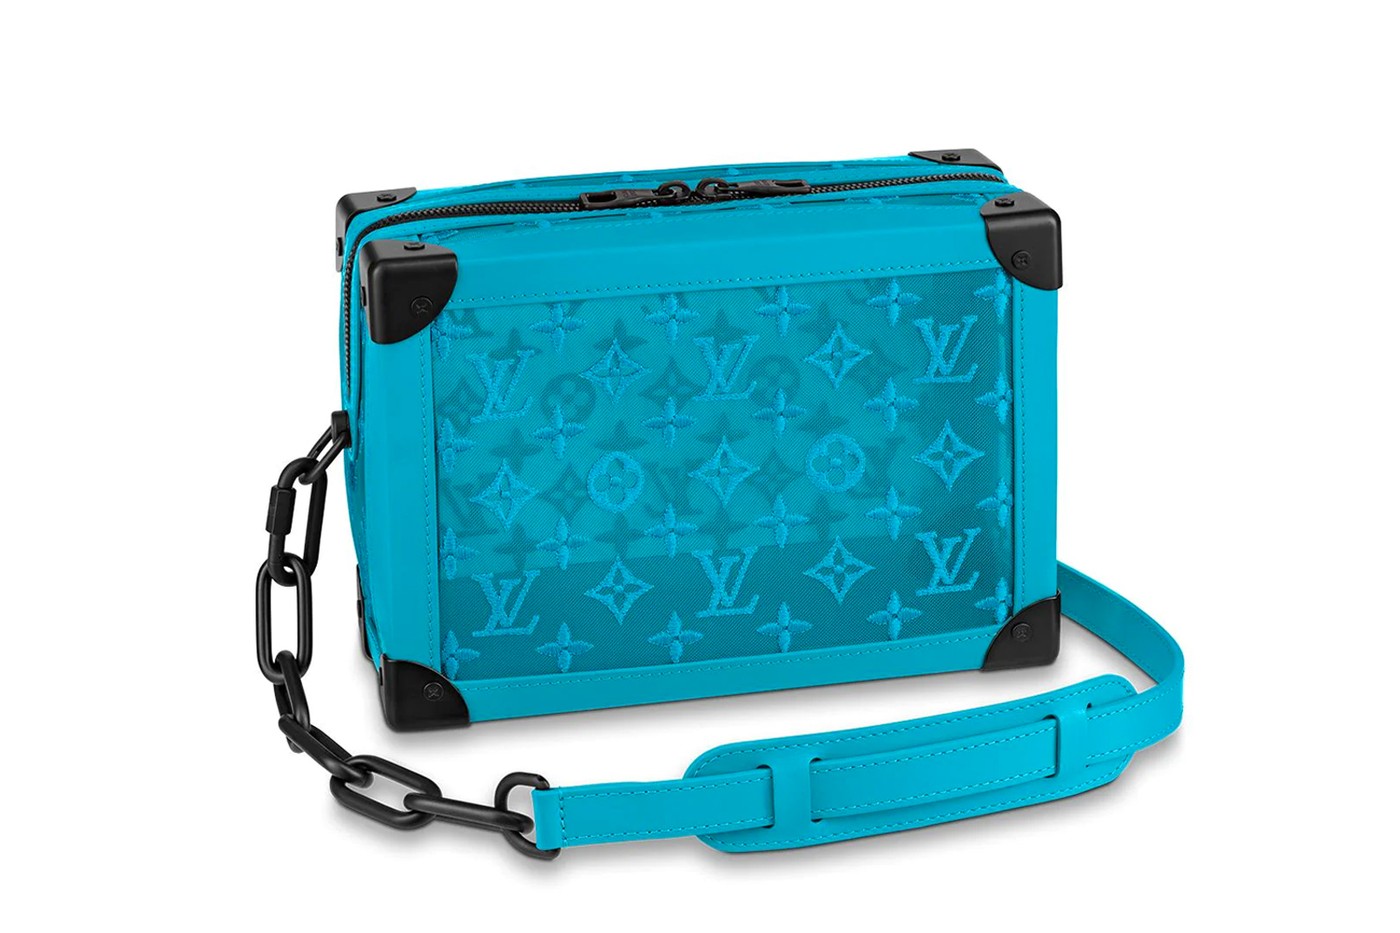 Louis Vuitton выпустил новые сумки по мотивам своих знаменитых сундуков для путешествий (фото 1)